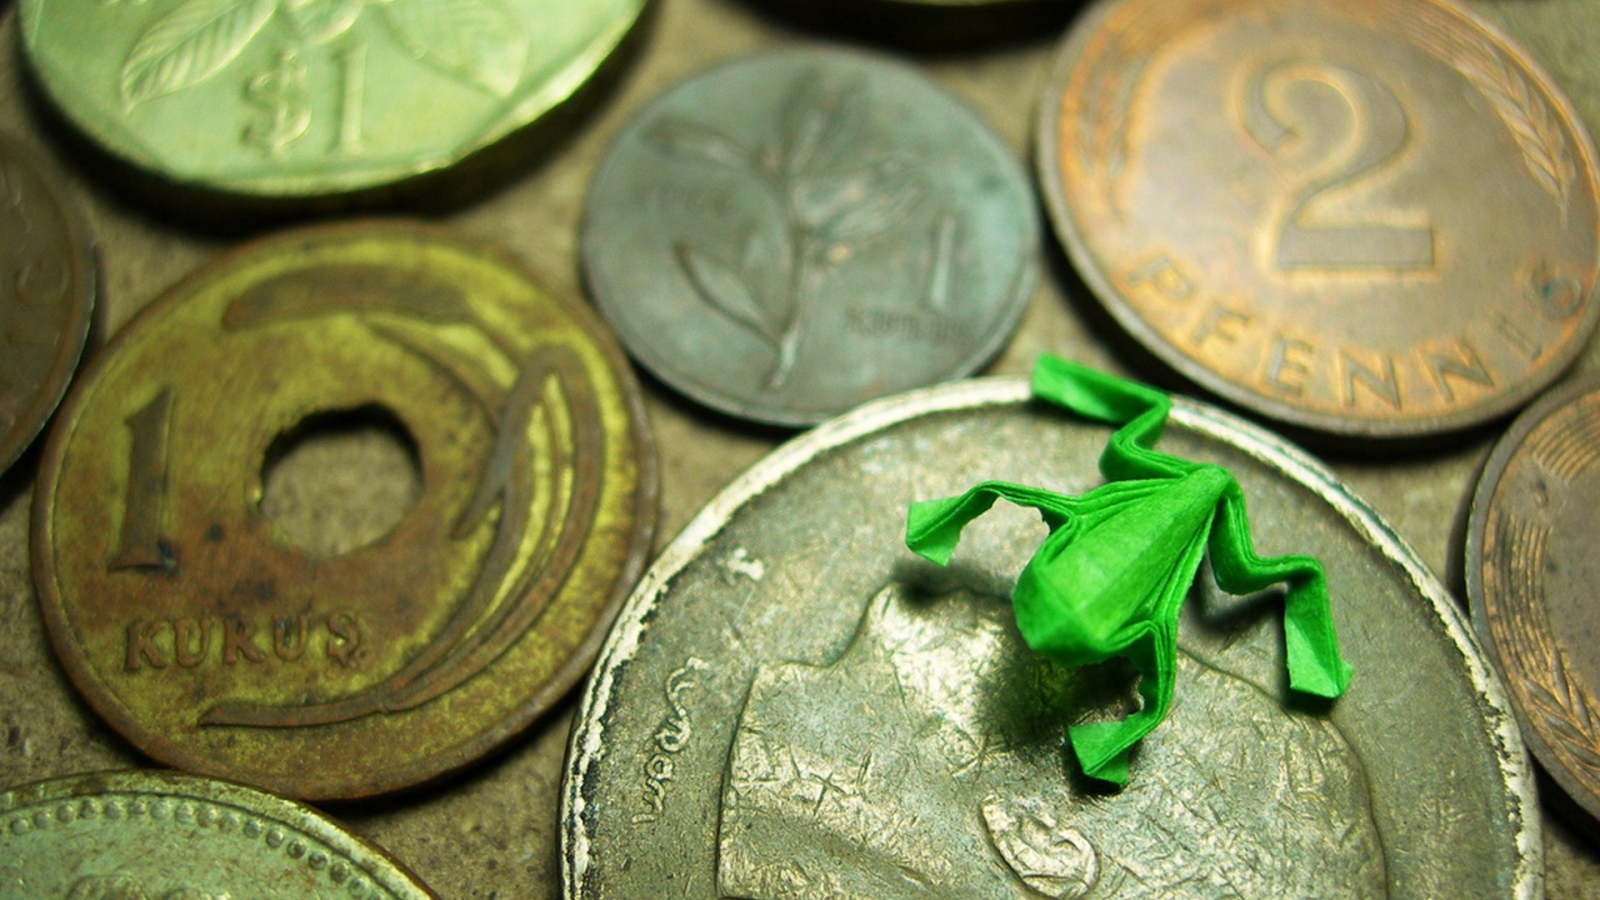 Фигурка лягушки на монетах